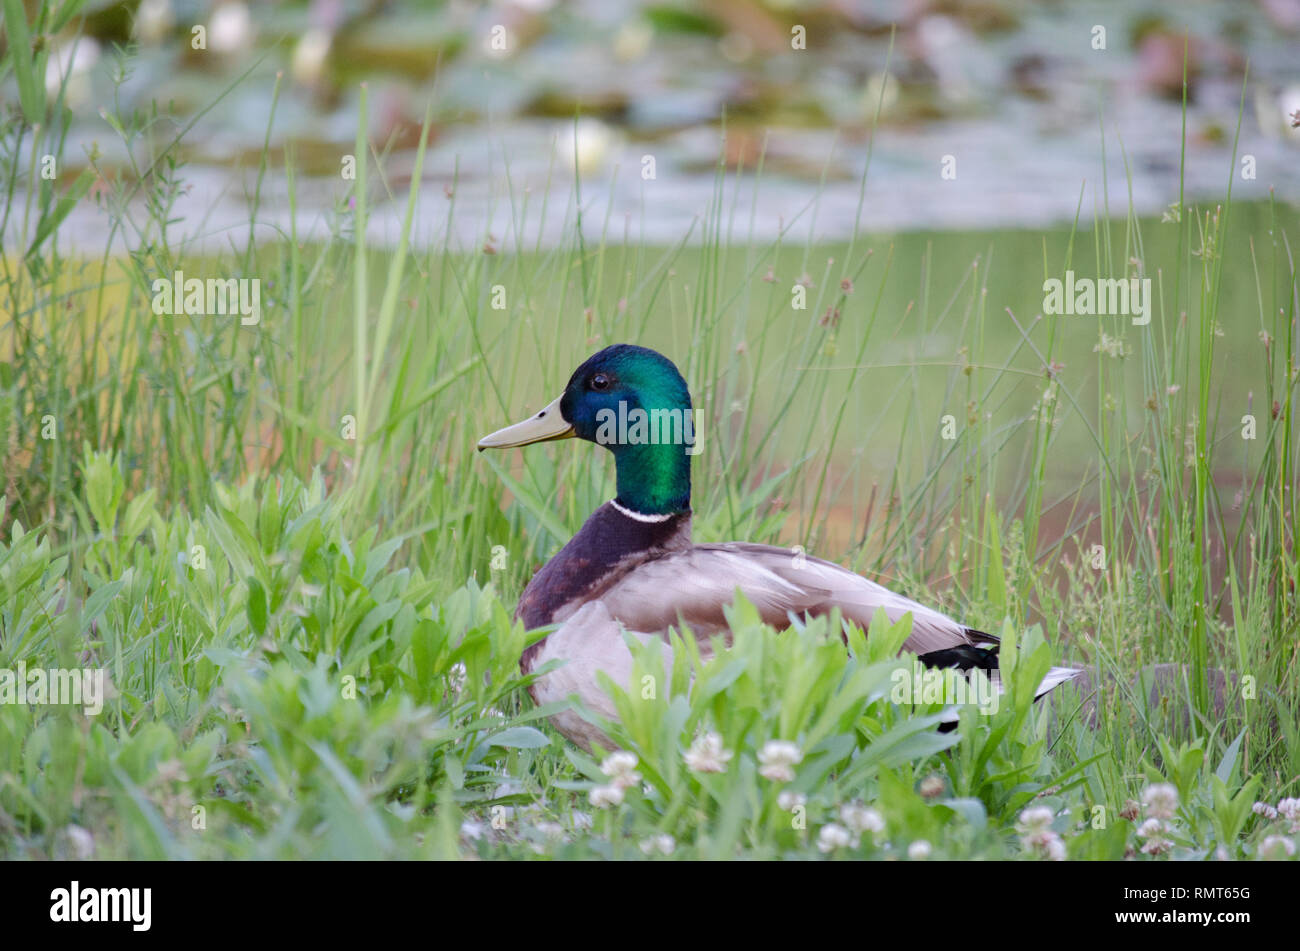 Stockente Ente Gans mit grünen und gelben Schnabel im grünen Gras FELD Stockfoto